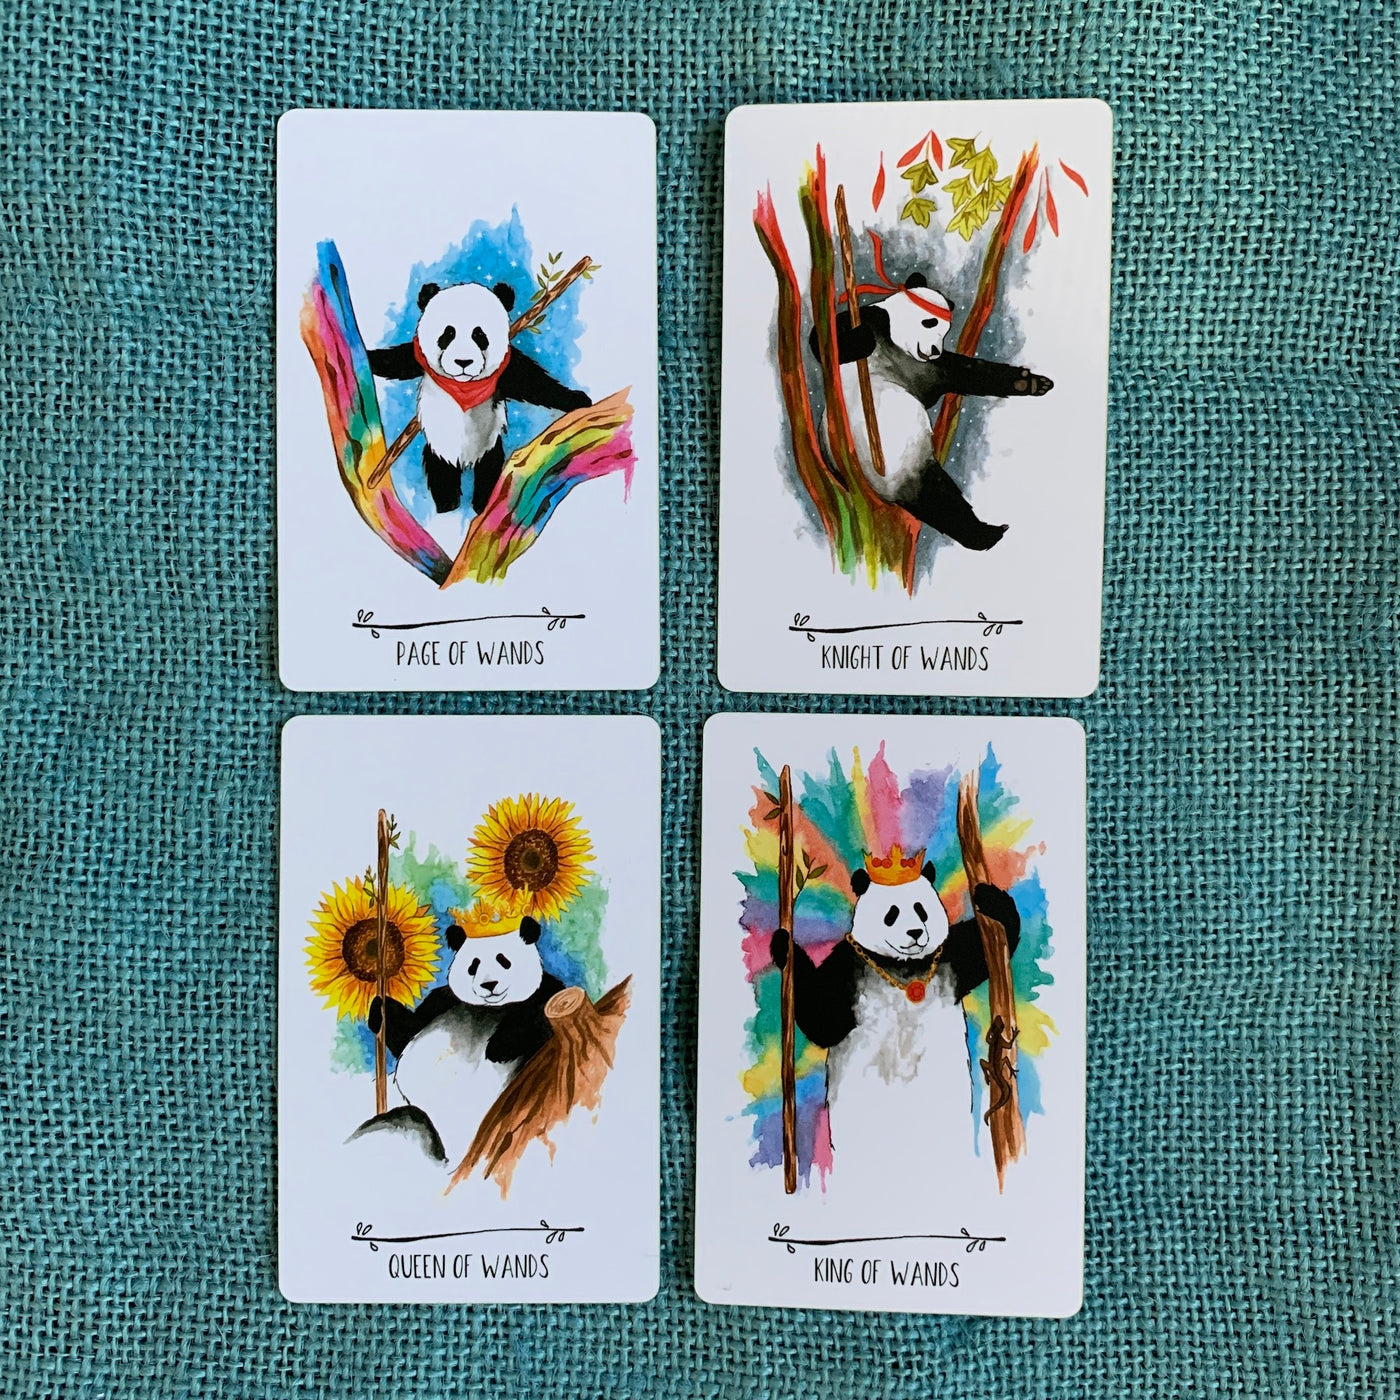 Way of the Panda Tarot